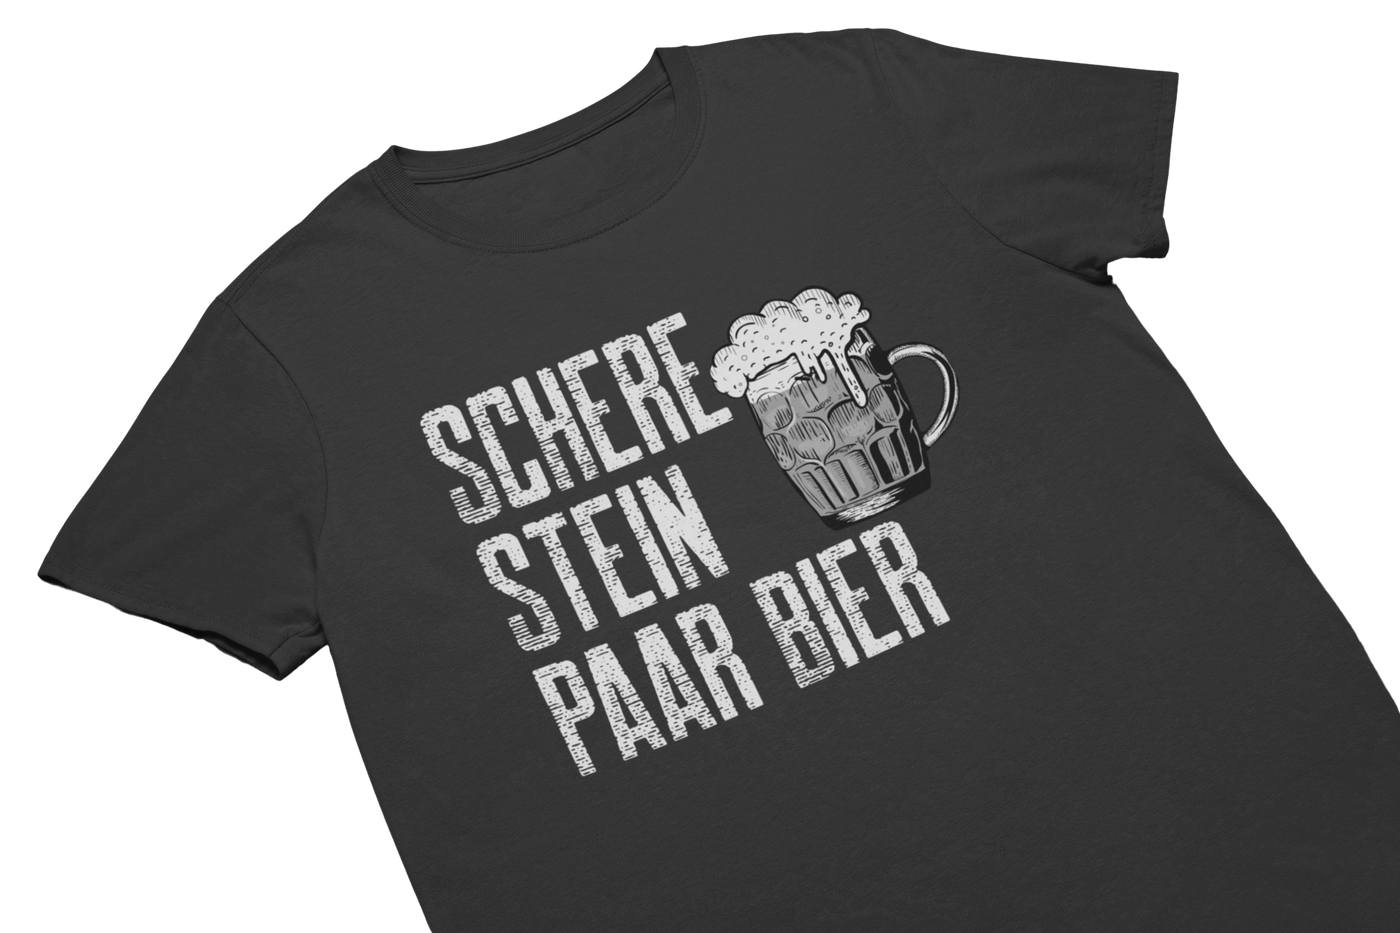 SCHERE STEIN PAAR BIER - T-Shirt Schwarz